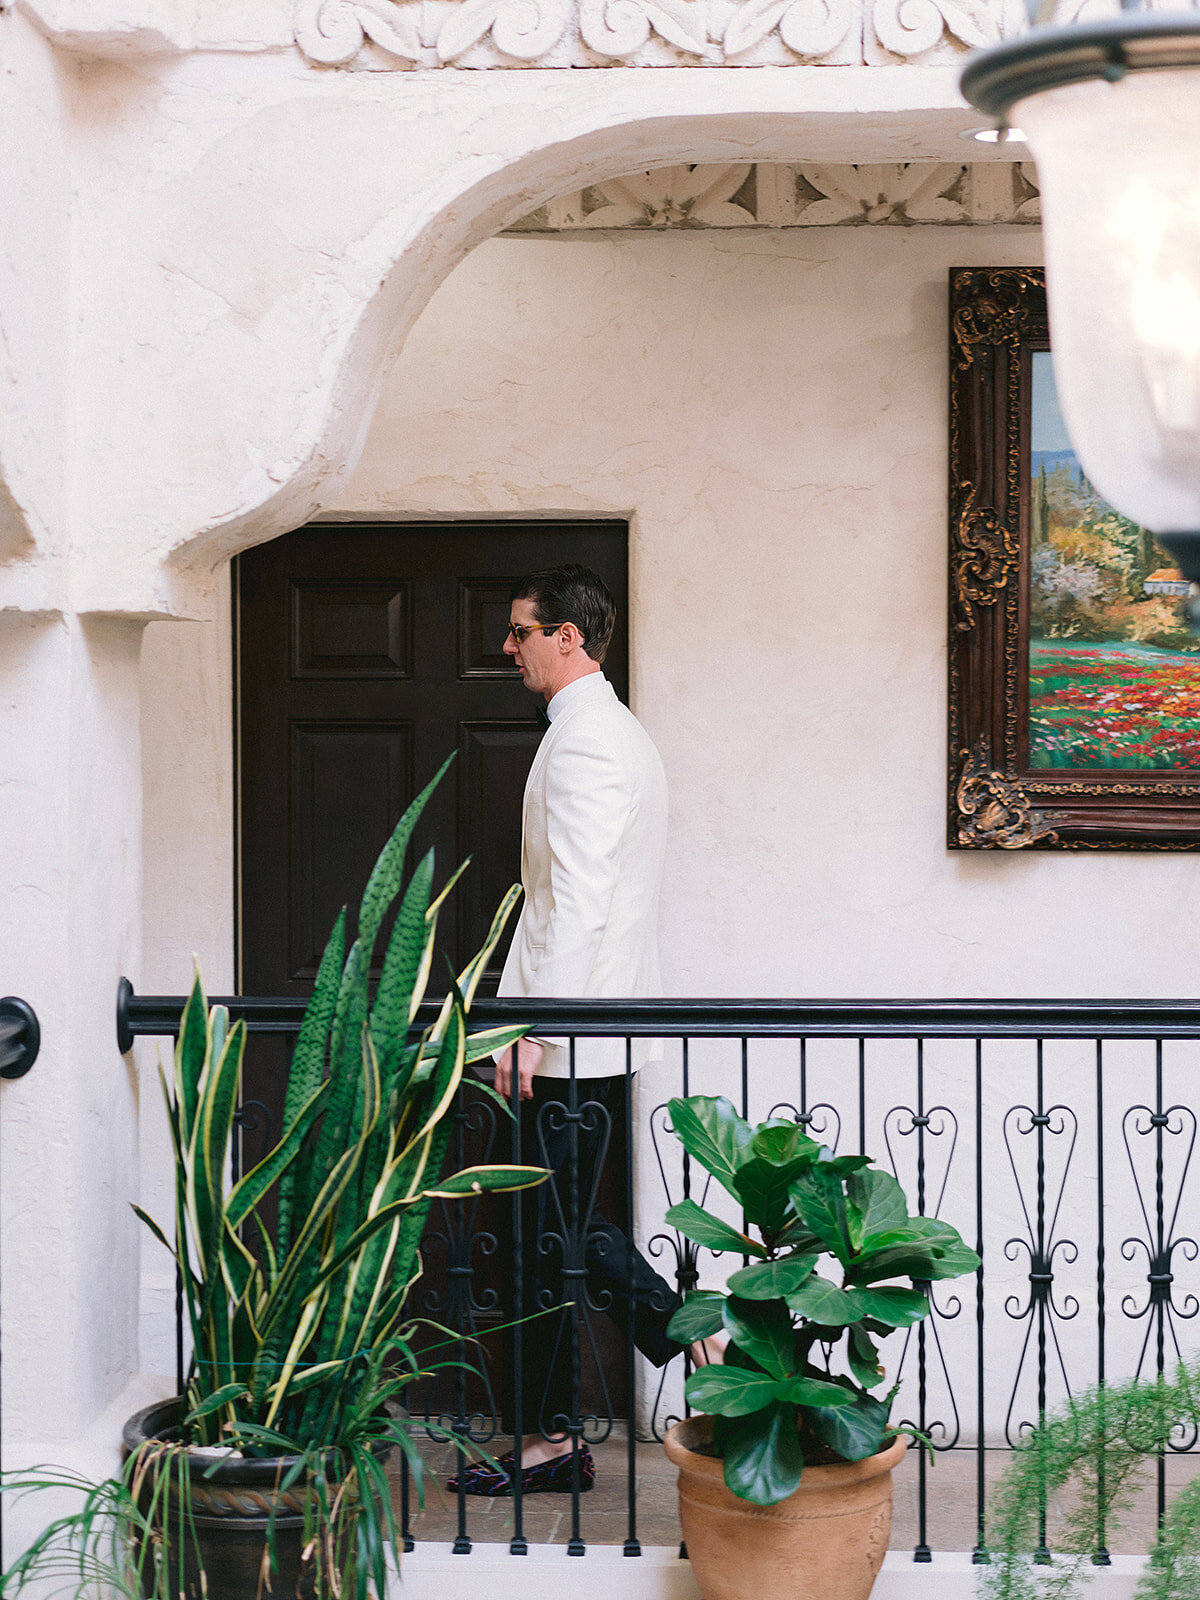 The groom walks through the atrium of Villa Antonia